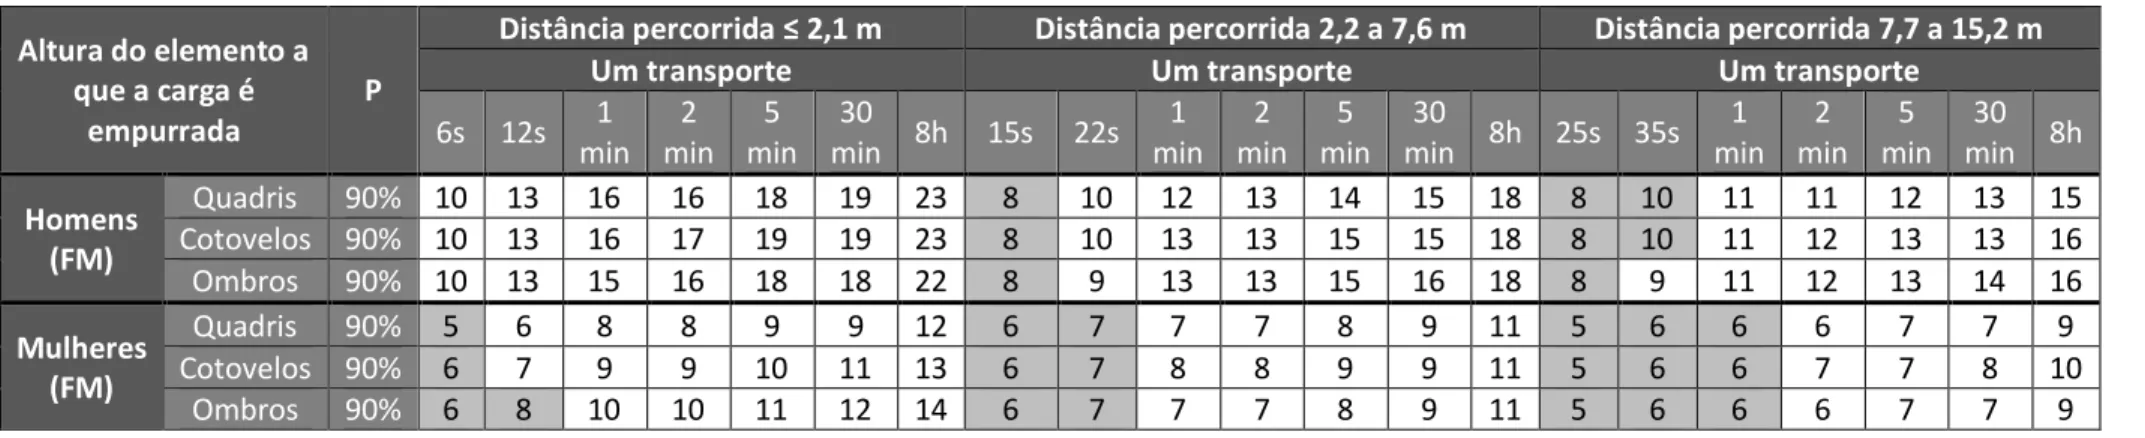 Tabela III-11 - Valores recomendados para a força de manutenção (FM) para empurrar, distâncias 2,1 a 15,2m (E3), adaptação da Direção geral das relações laborais da Catalunha, 2006